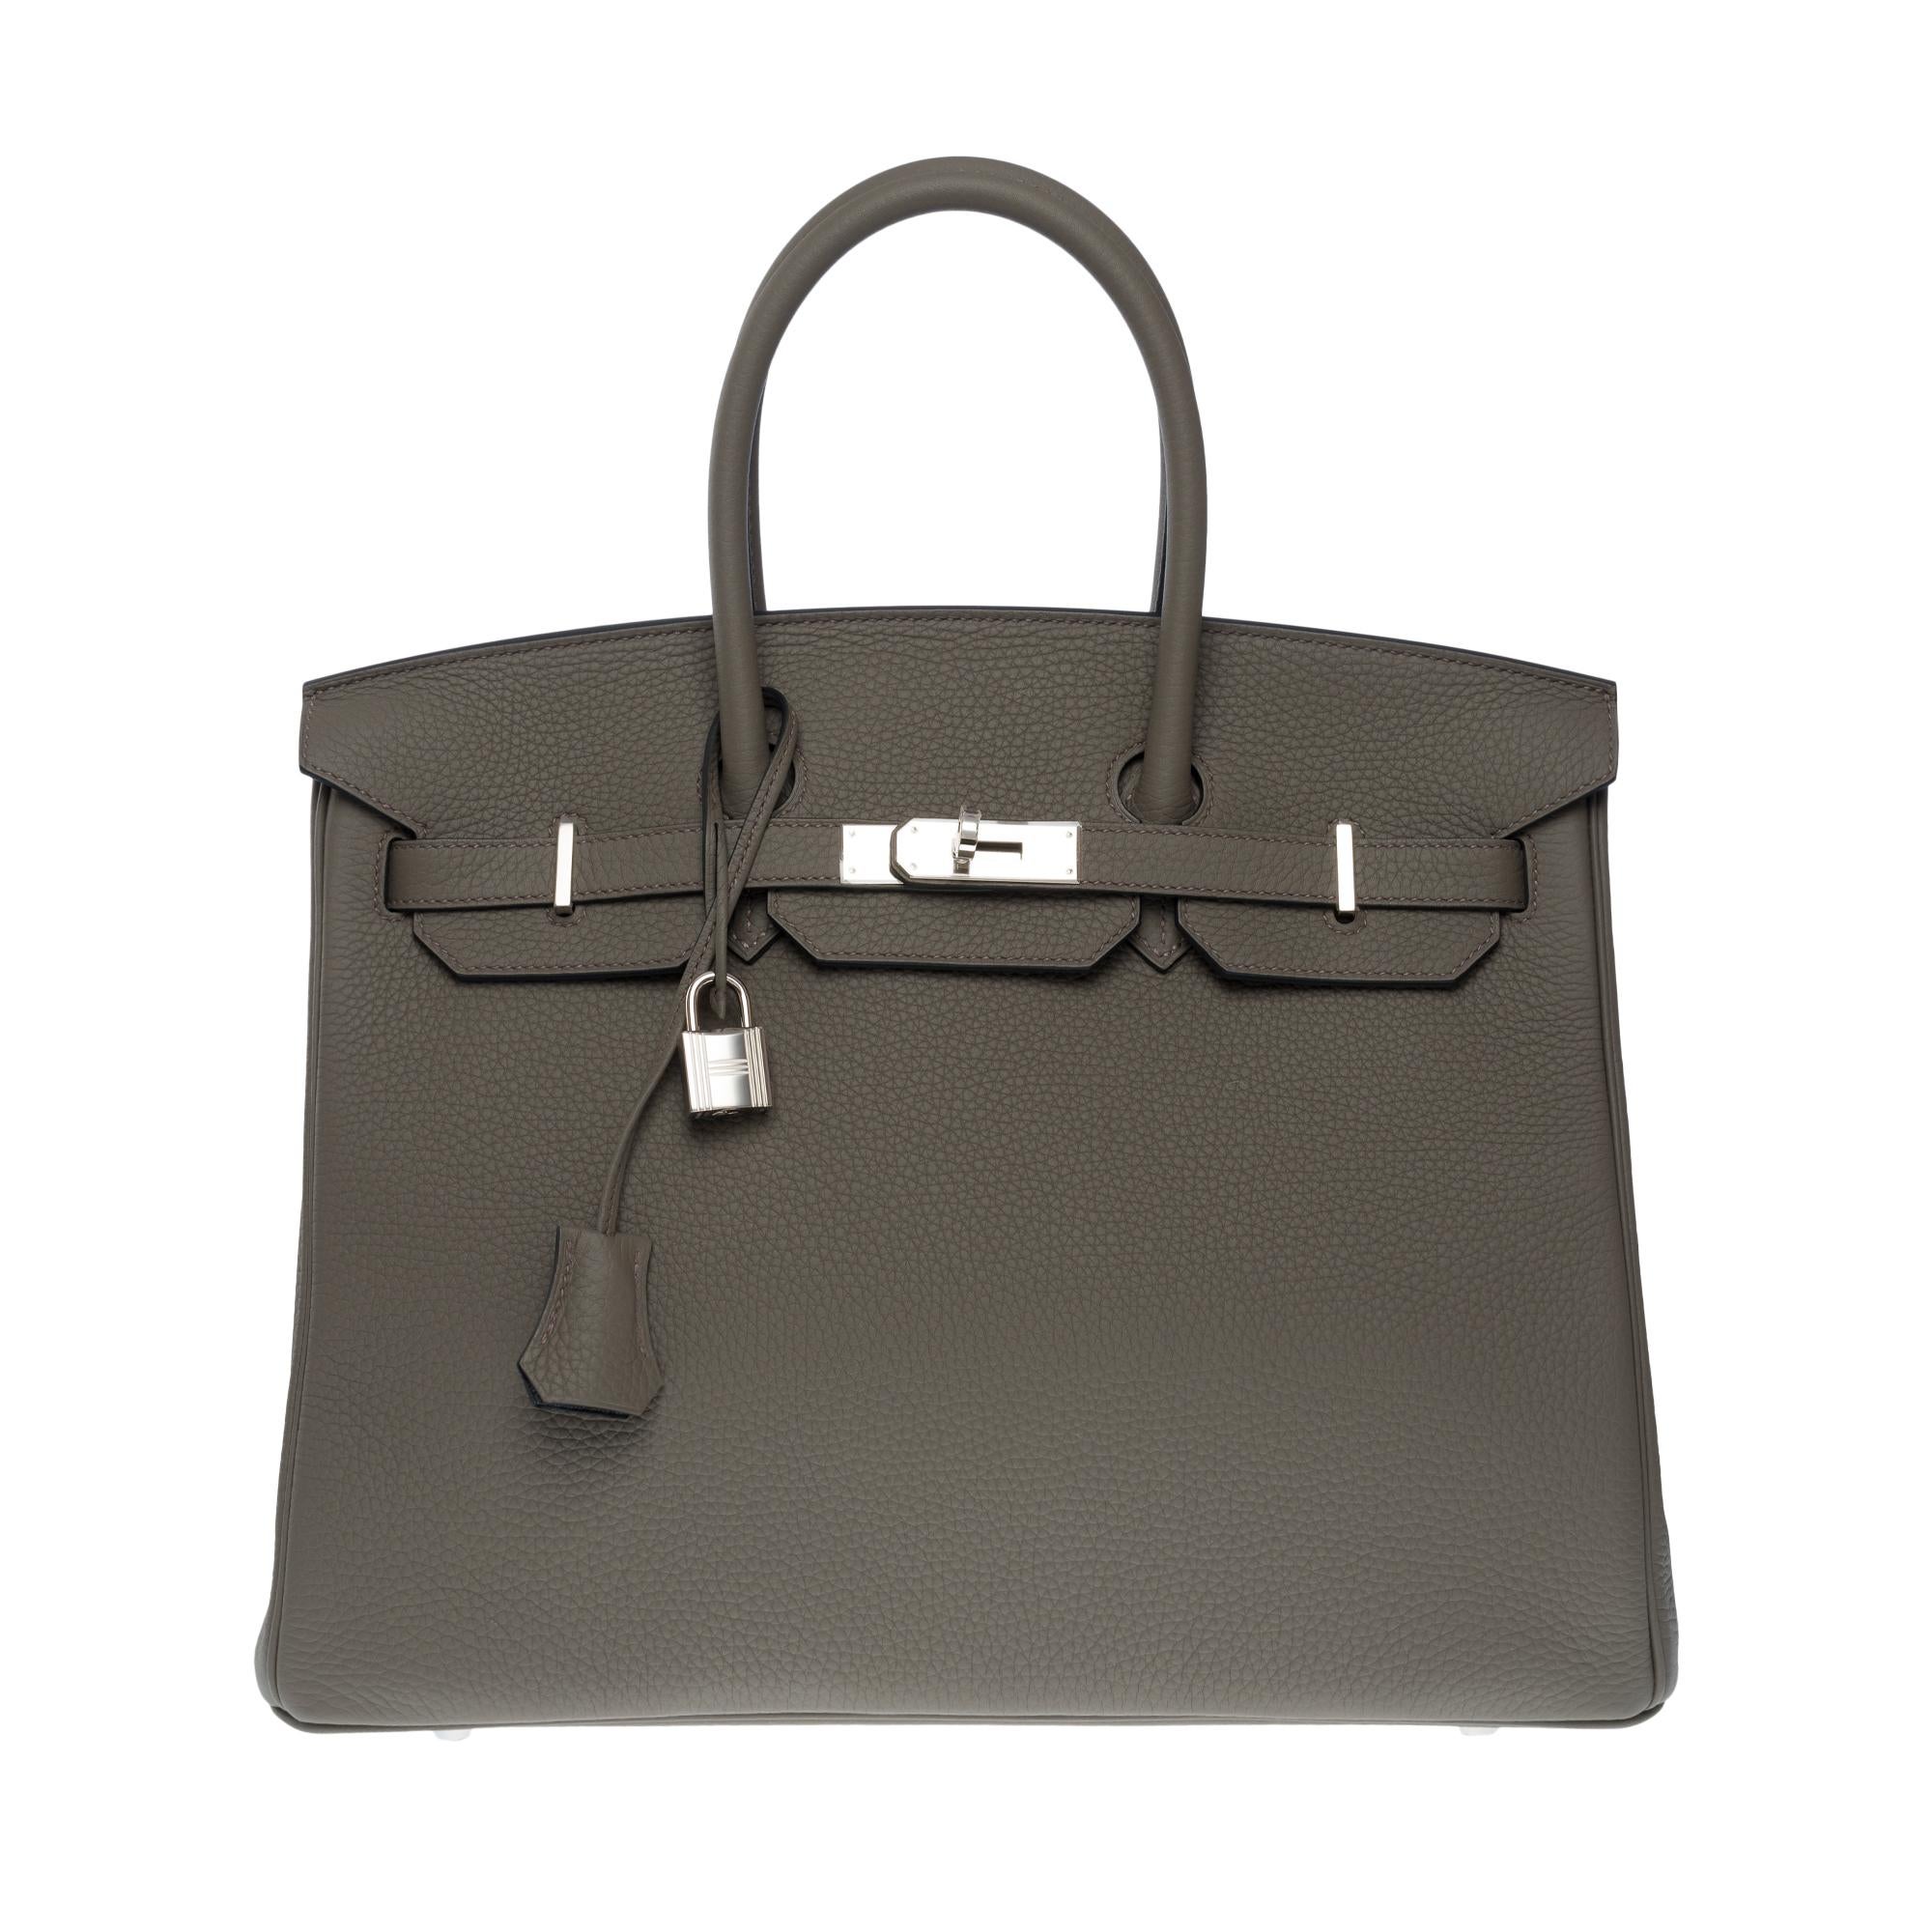 Rare sac à main Hermès Birkin 35 HSS (Special Order) en cuir Etain Togo, SHW Neuf à Paris, IDF